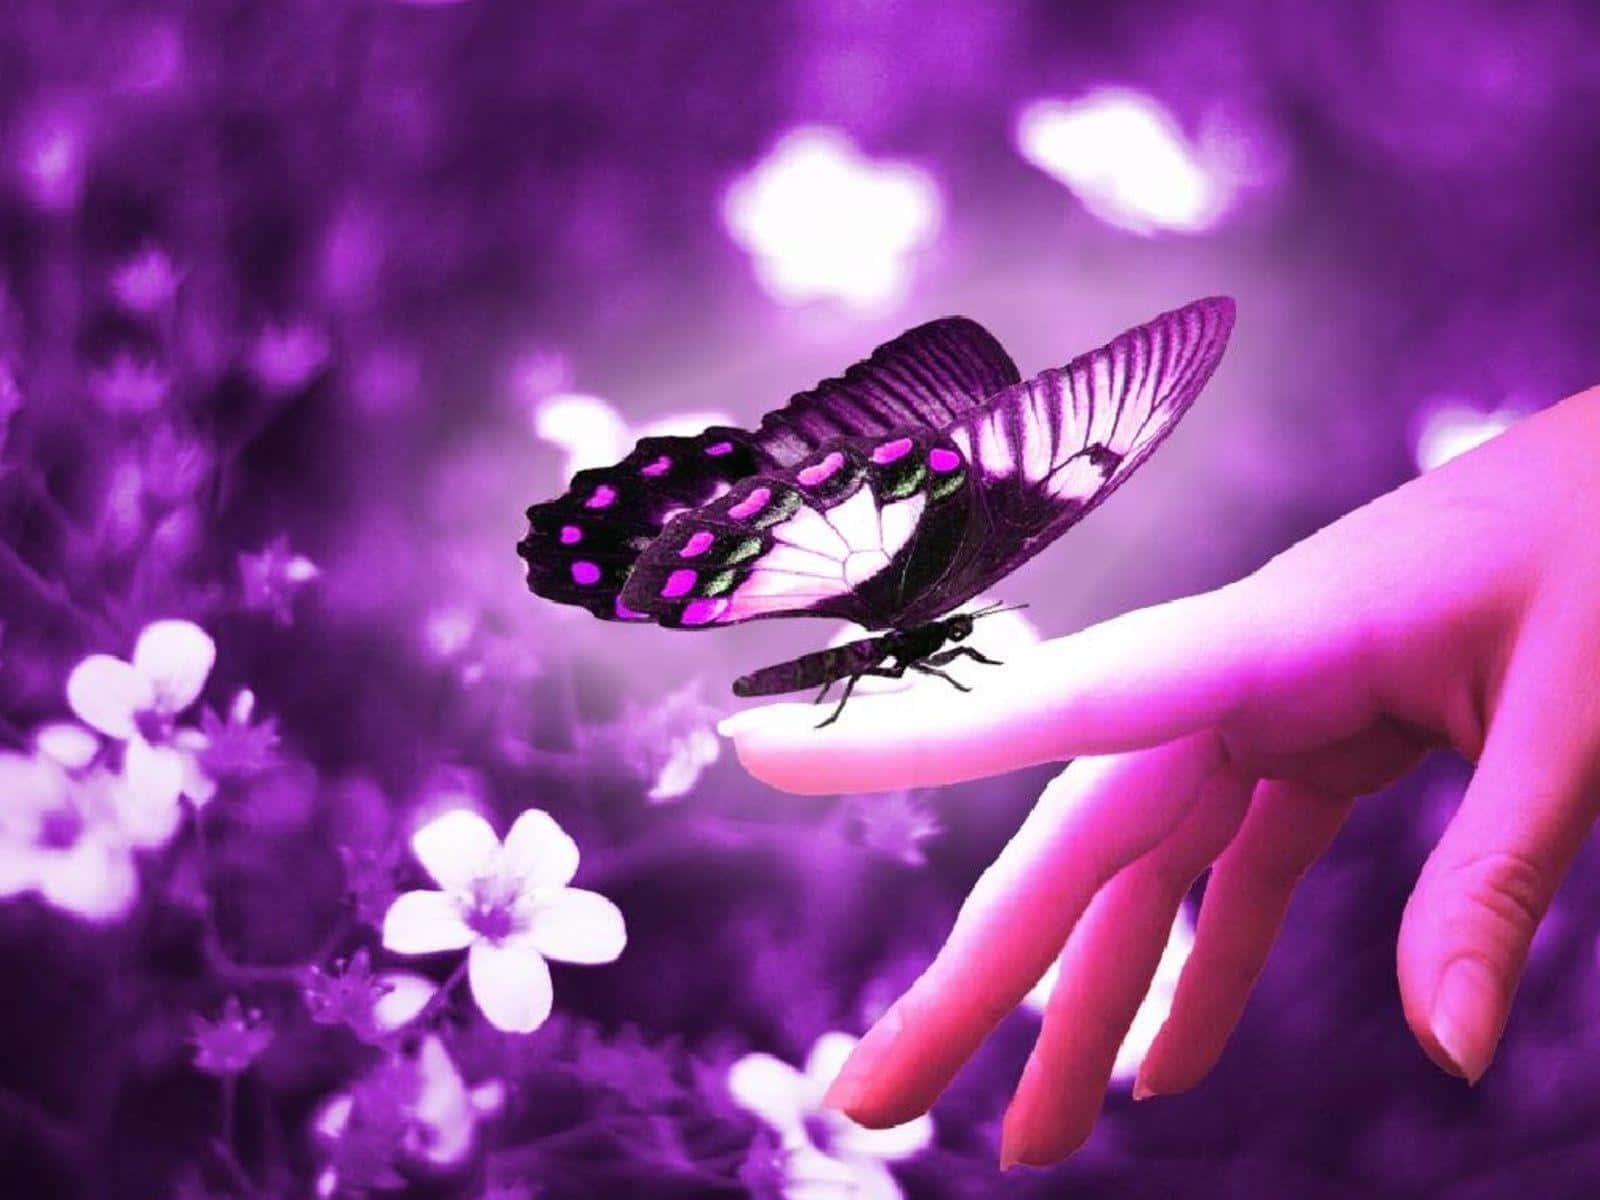 The beauty of a butterfly in flight. Wallpaper